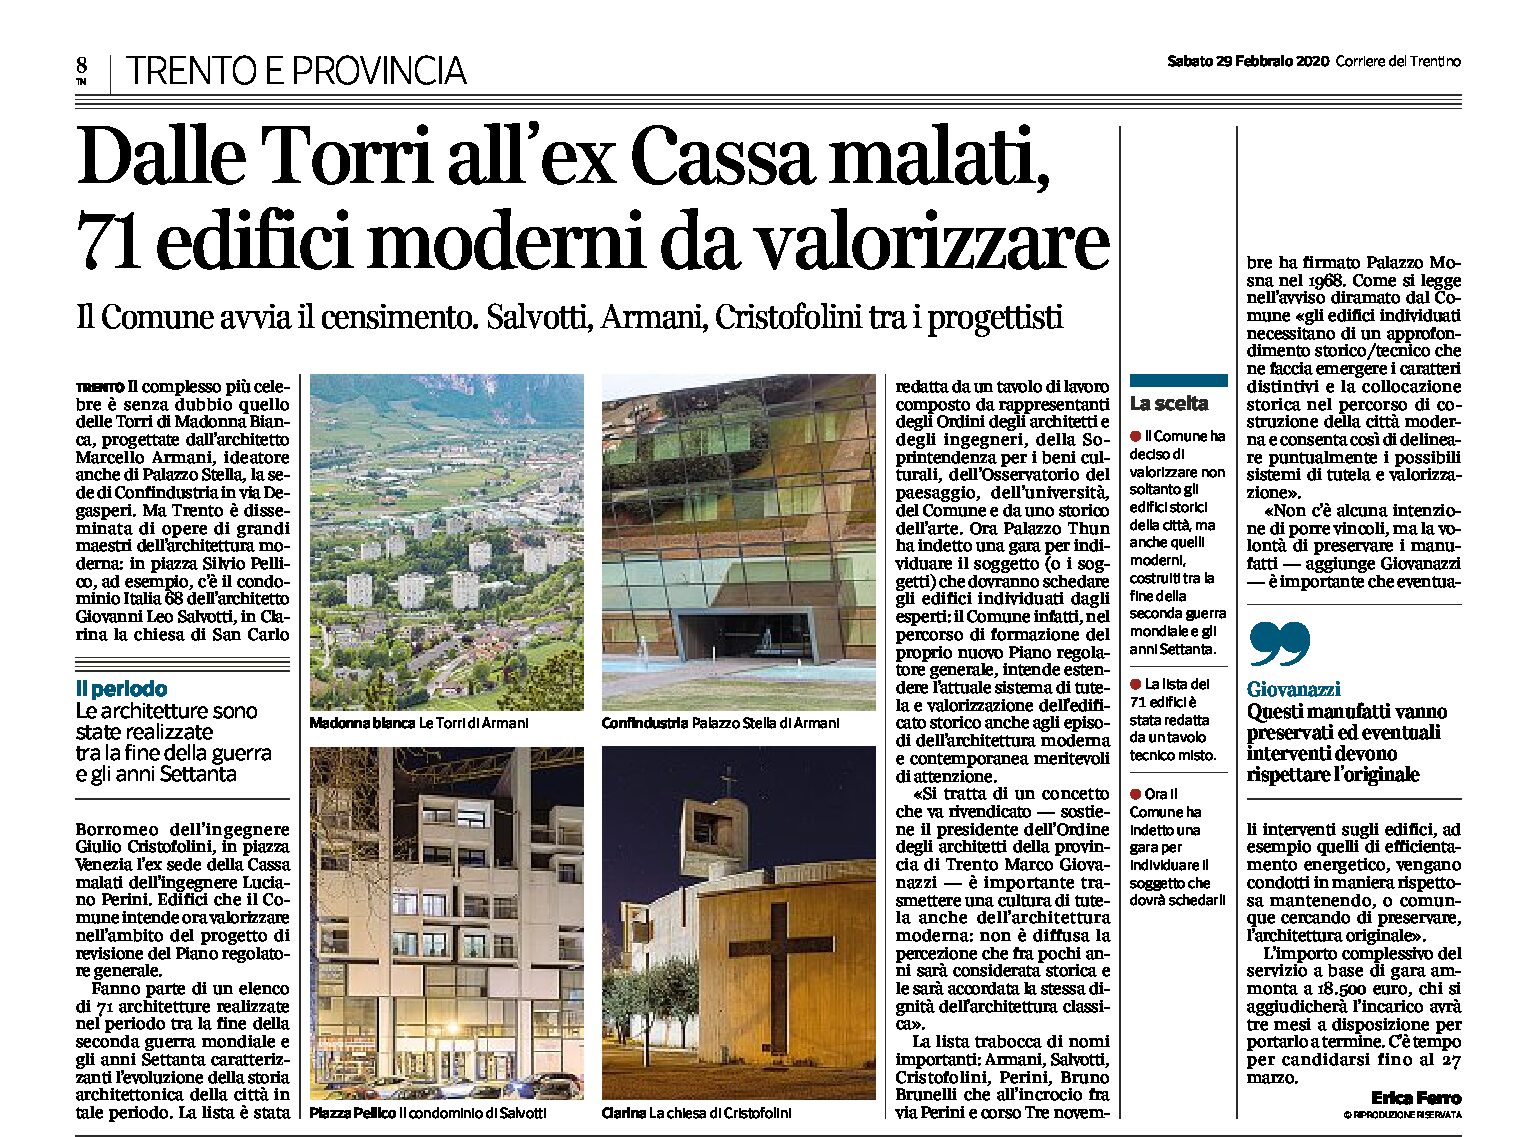 Trento: dalle Torri all’ex Cassa malati, 71 edifici da valorizzare. Il Comune avvia il censimento